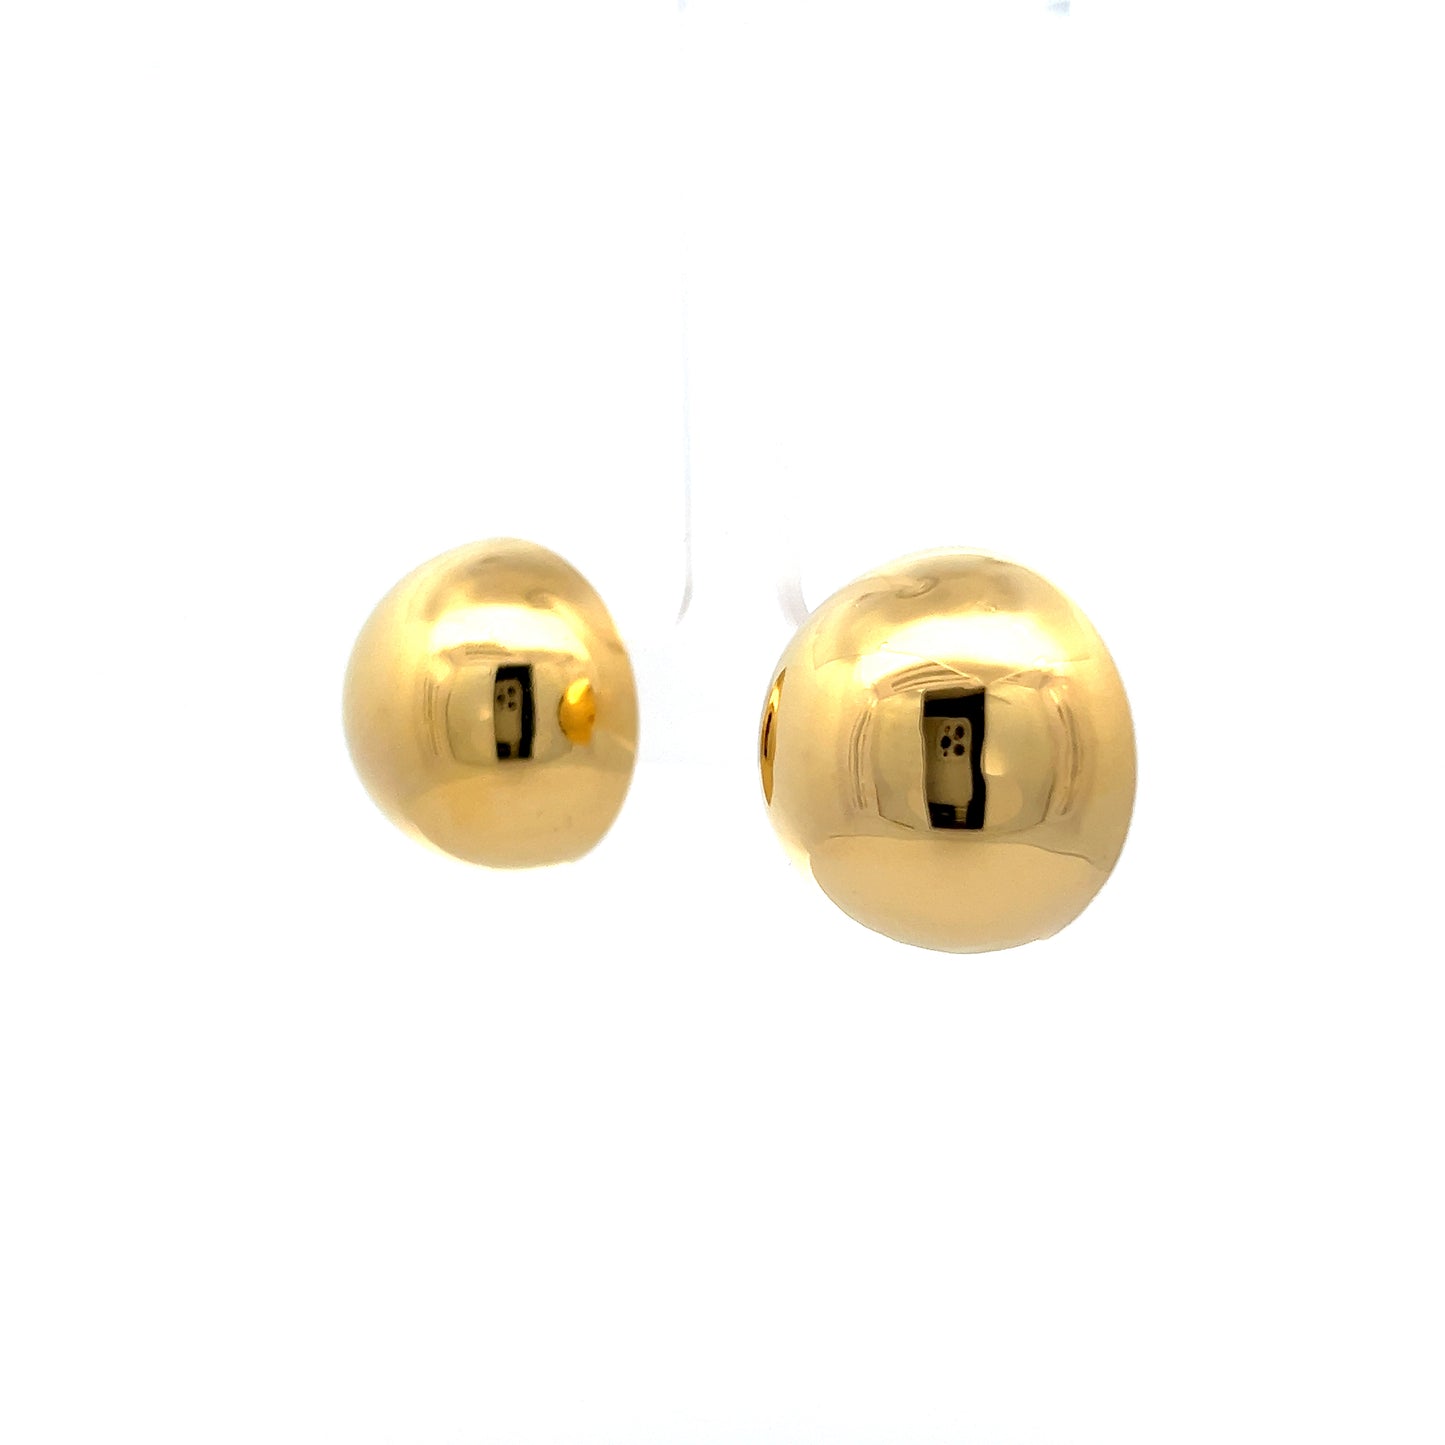 Oversized Ball Stud Earrings in 18k Yellow Gold